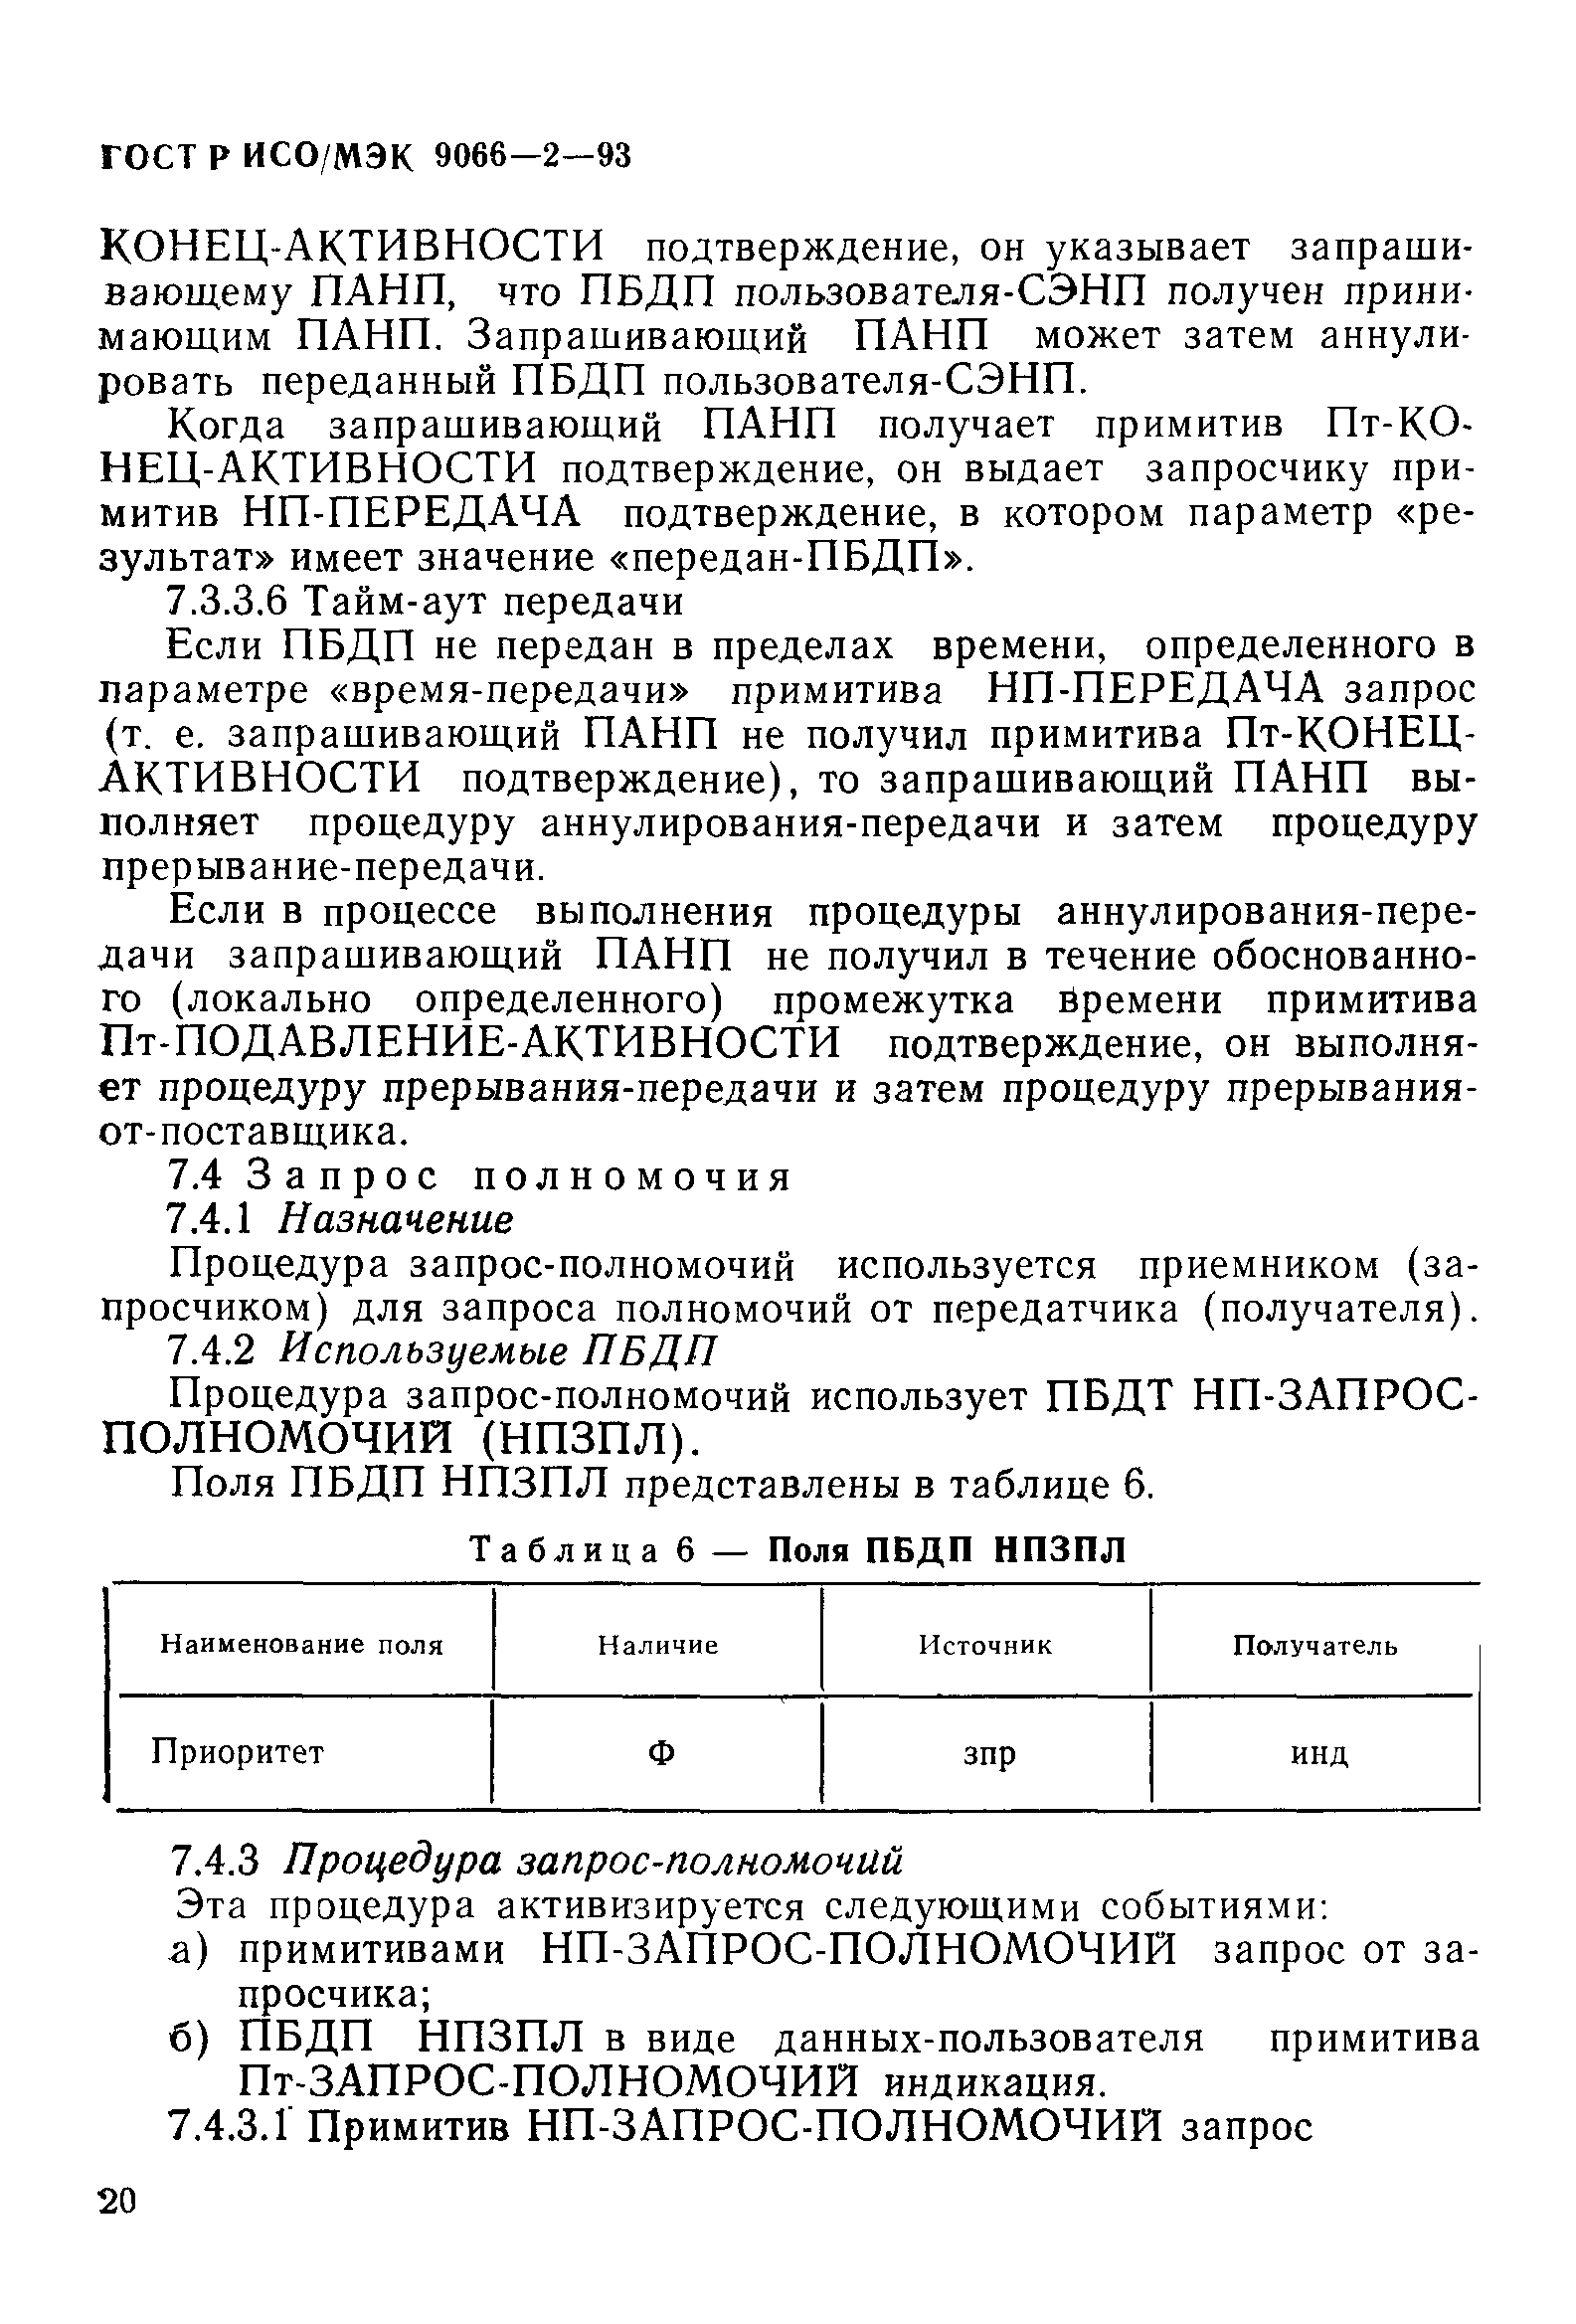 ГОСТ Р ИСО/МЭК 9066-2-93